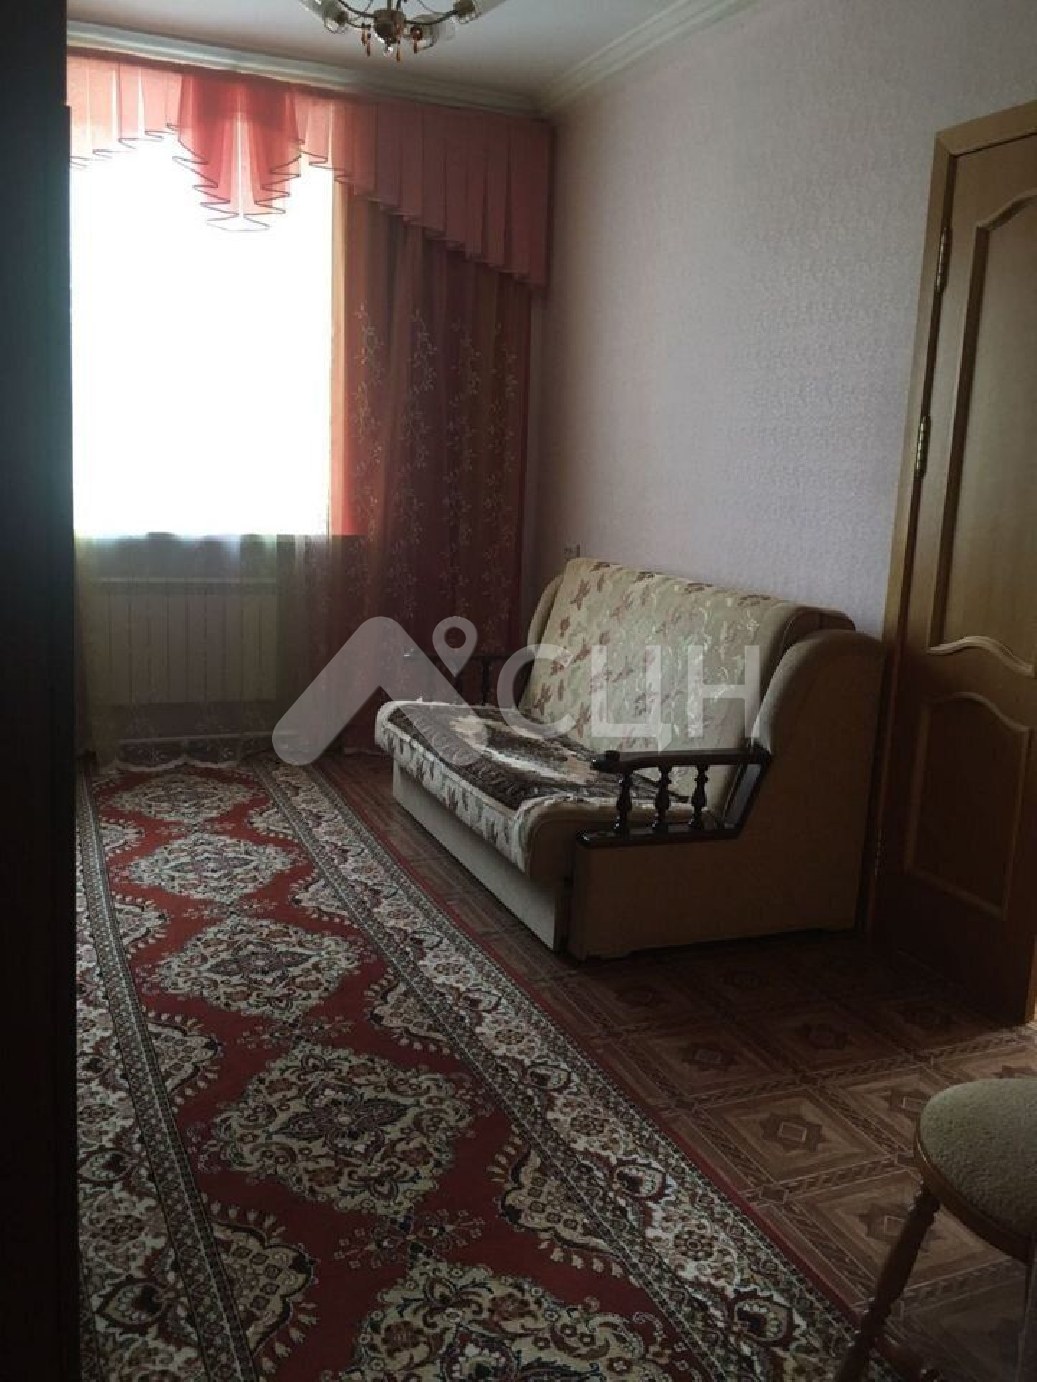 колсар недвижимость
: Г. Саров, проспект Ленина, 8, 3-комн квартира, этаж 1 из 4, продажа.